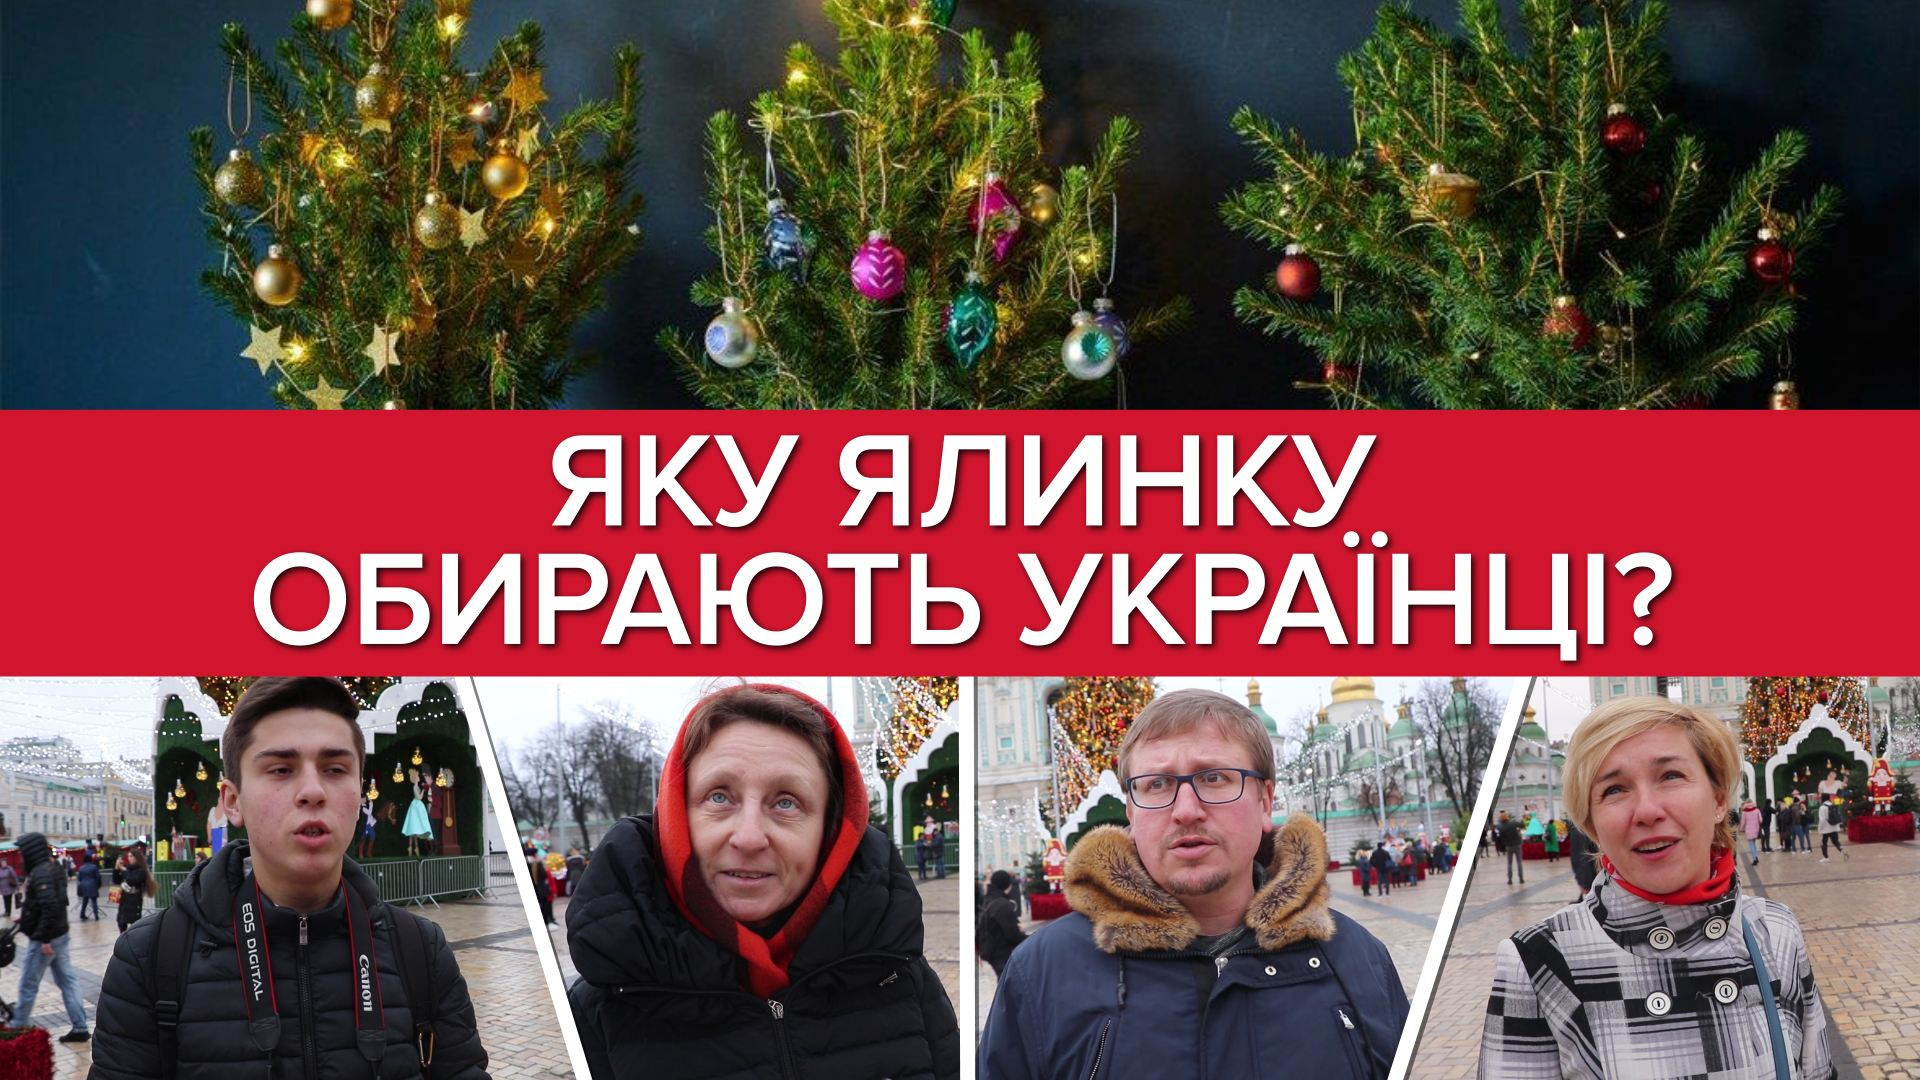 Какую елку выбирают украинцы: искусственную или живую?